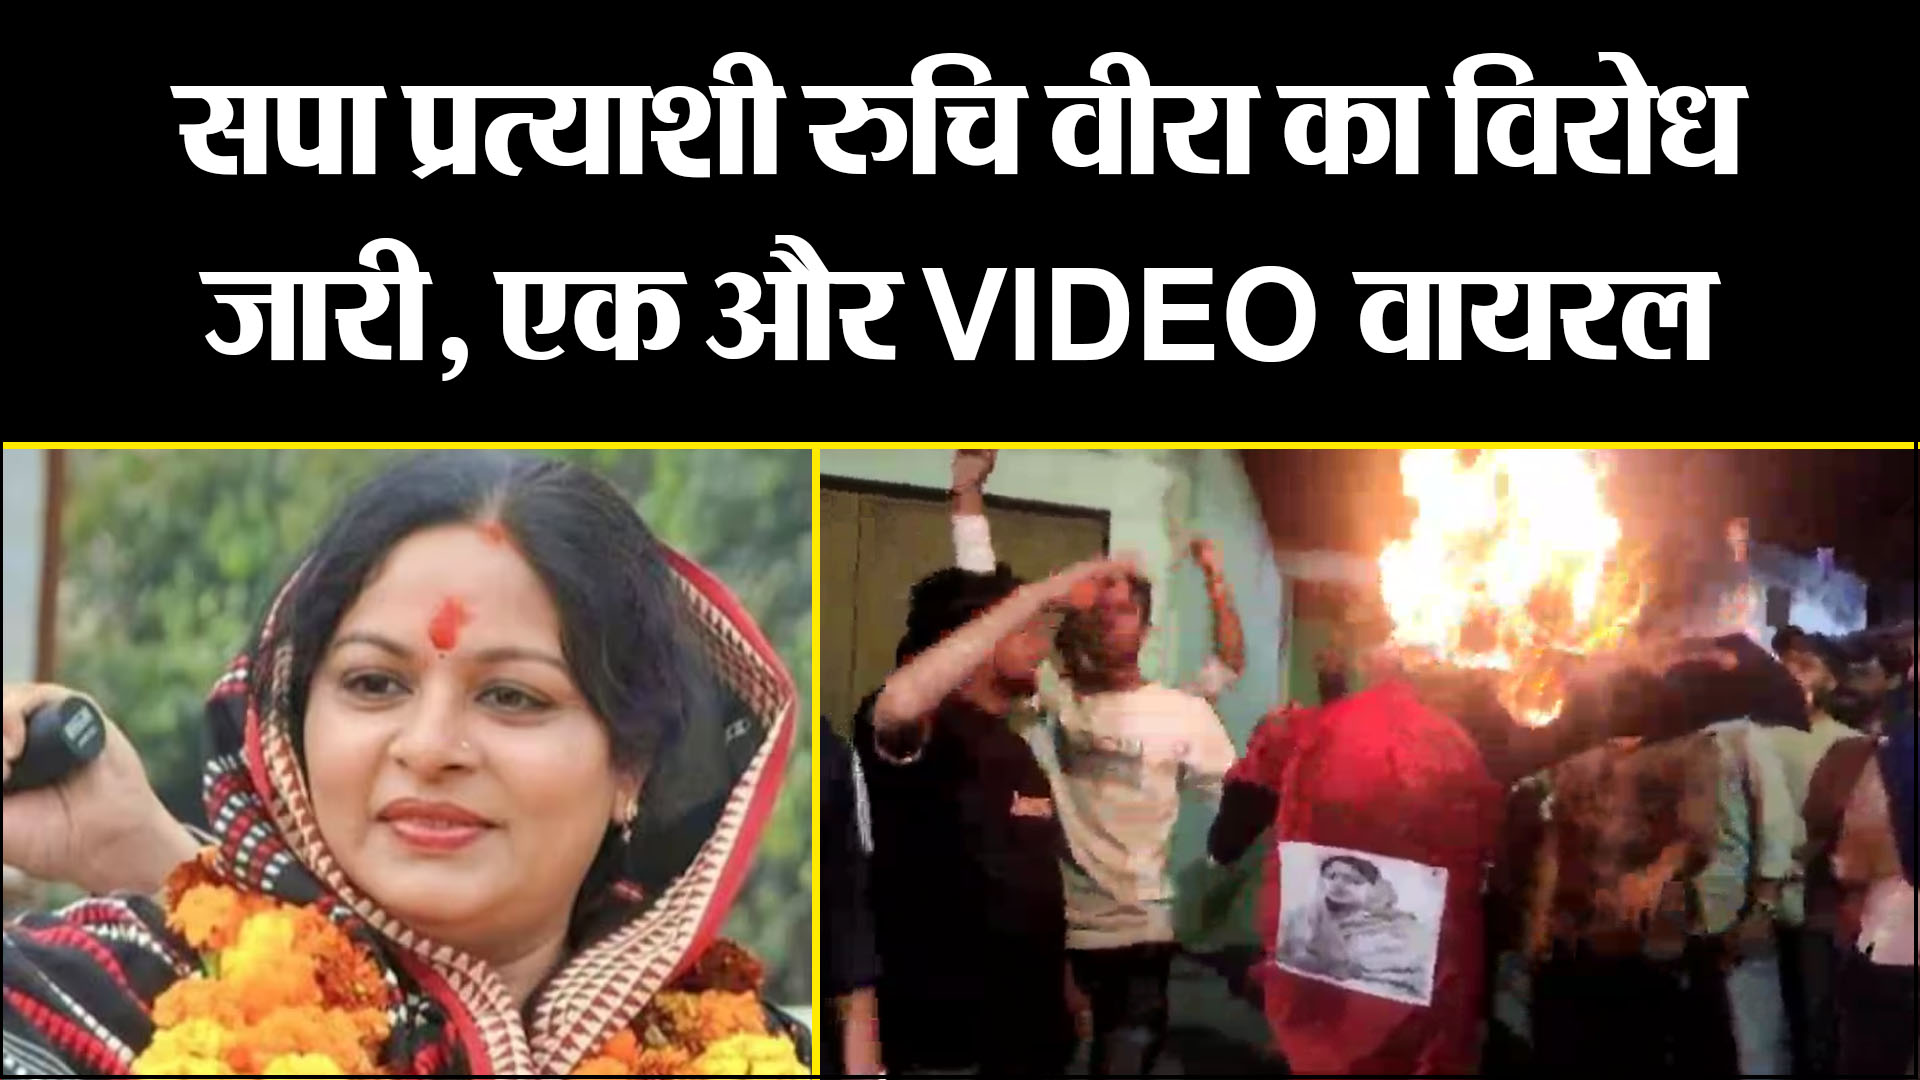 मुरादाबाद:  सपा प्रत्याशी रुचि वीरा का विरोध जारी, एक और VIDEO वायरल